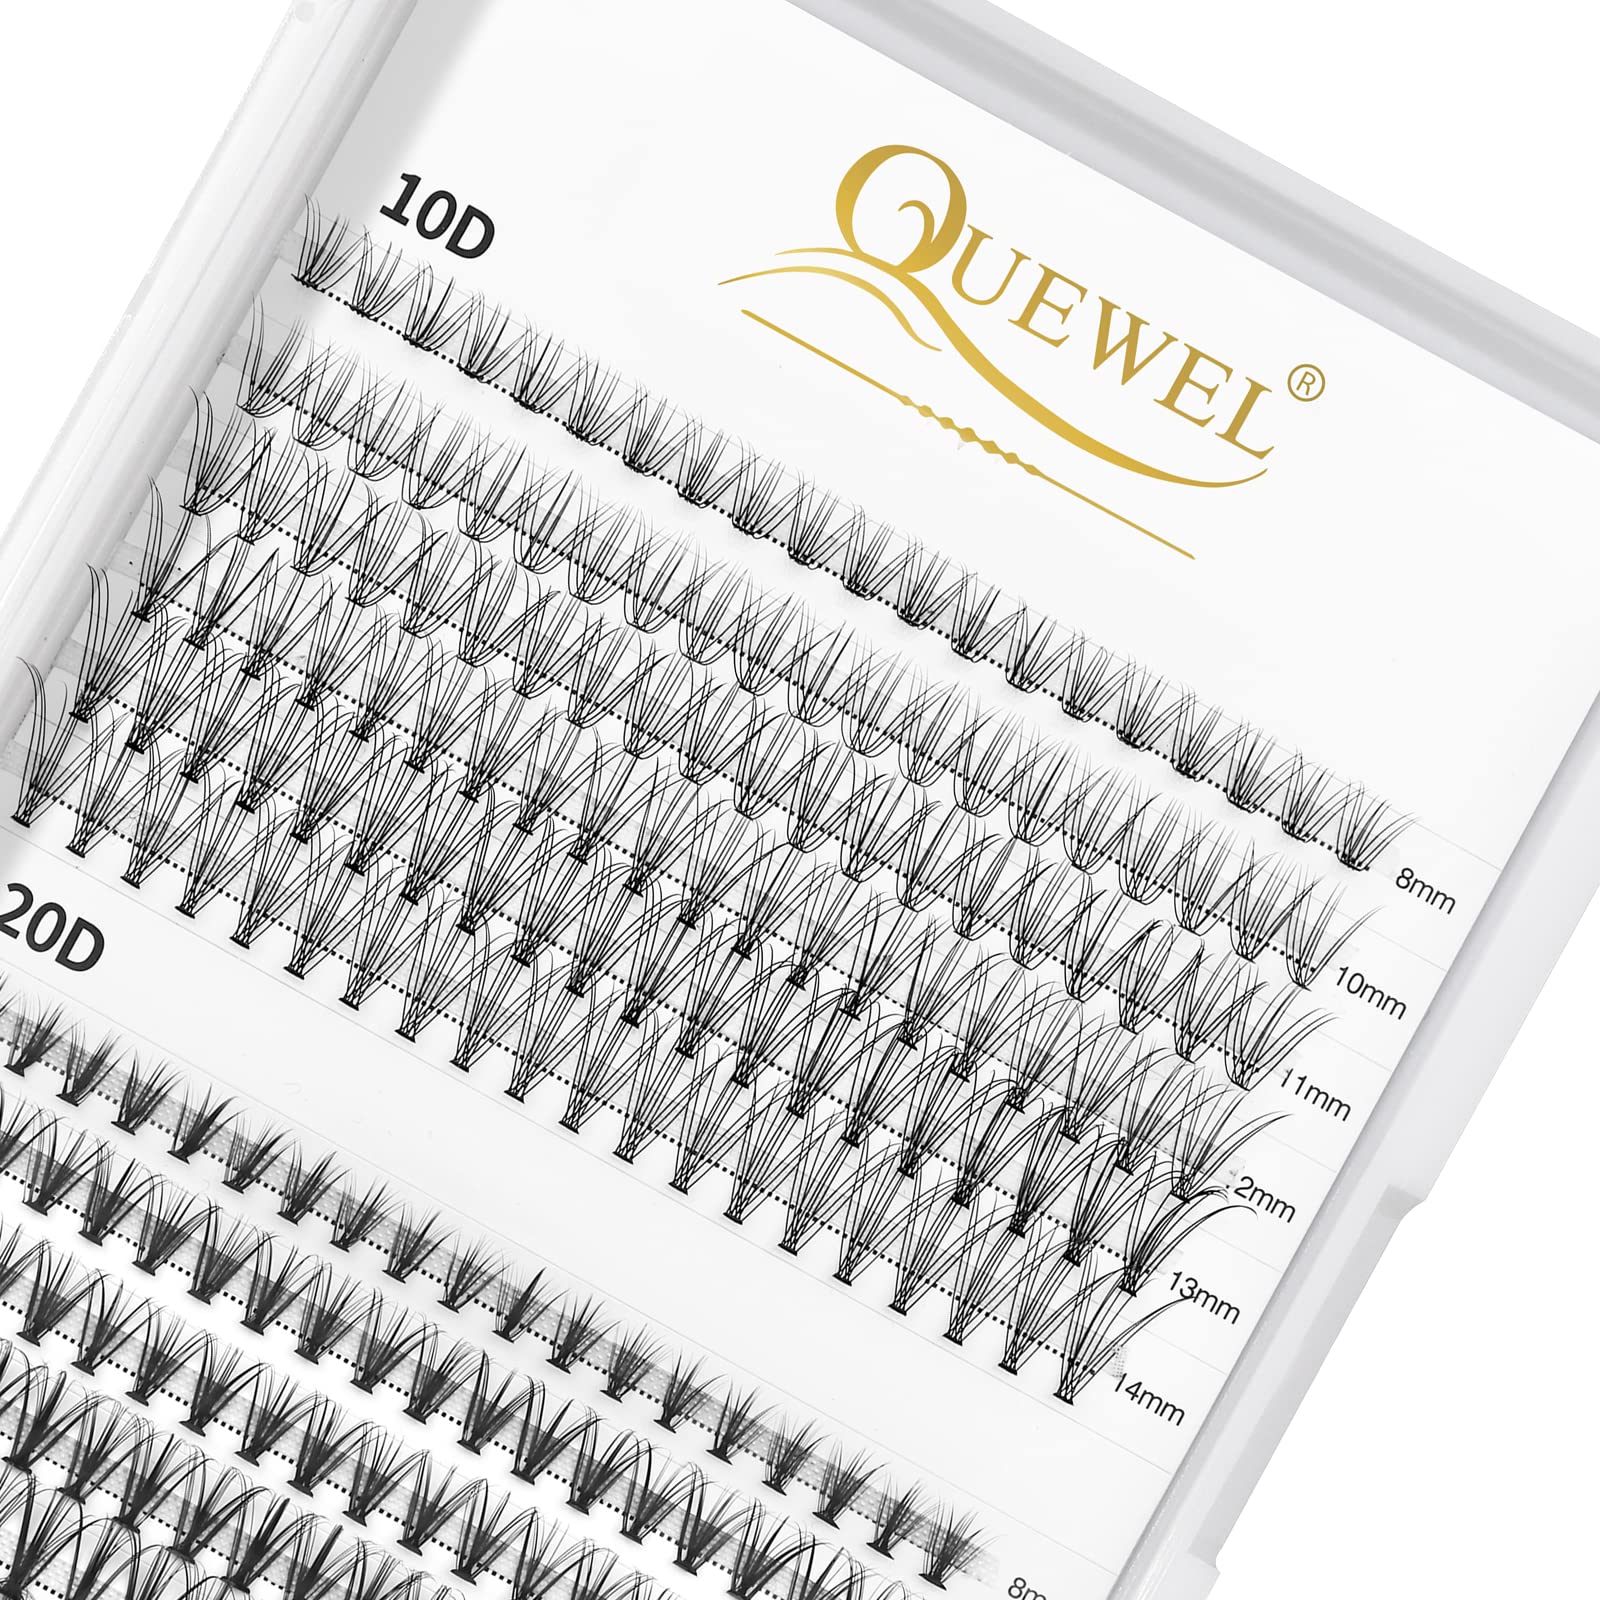 QUEWEL 240Pcs Cluster Lashes 10D+20D D Curl Mix8-14mm Lash Extensions Soft&Natural False Eyelashes & Lash Clusters Bond, White Lash Adhesive For DIY Eyelash Extensions